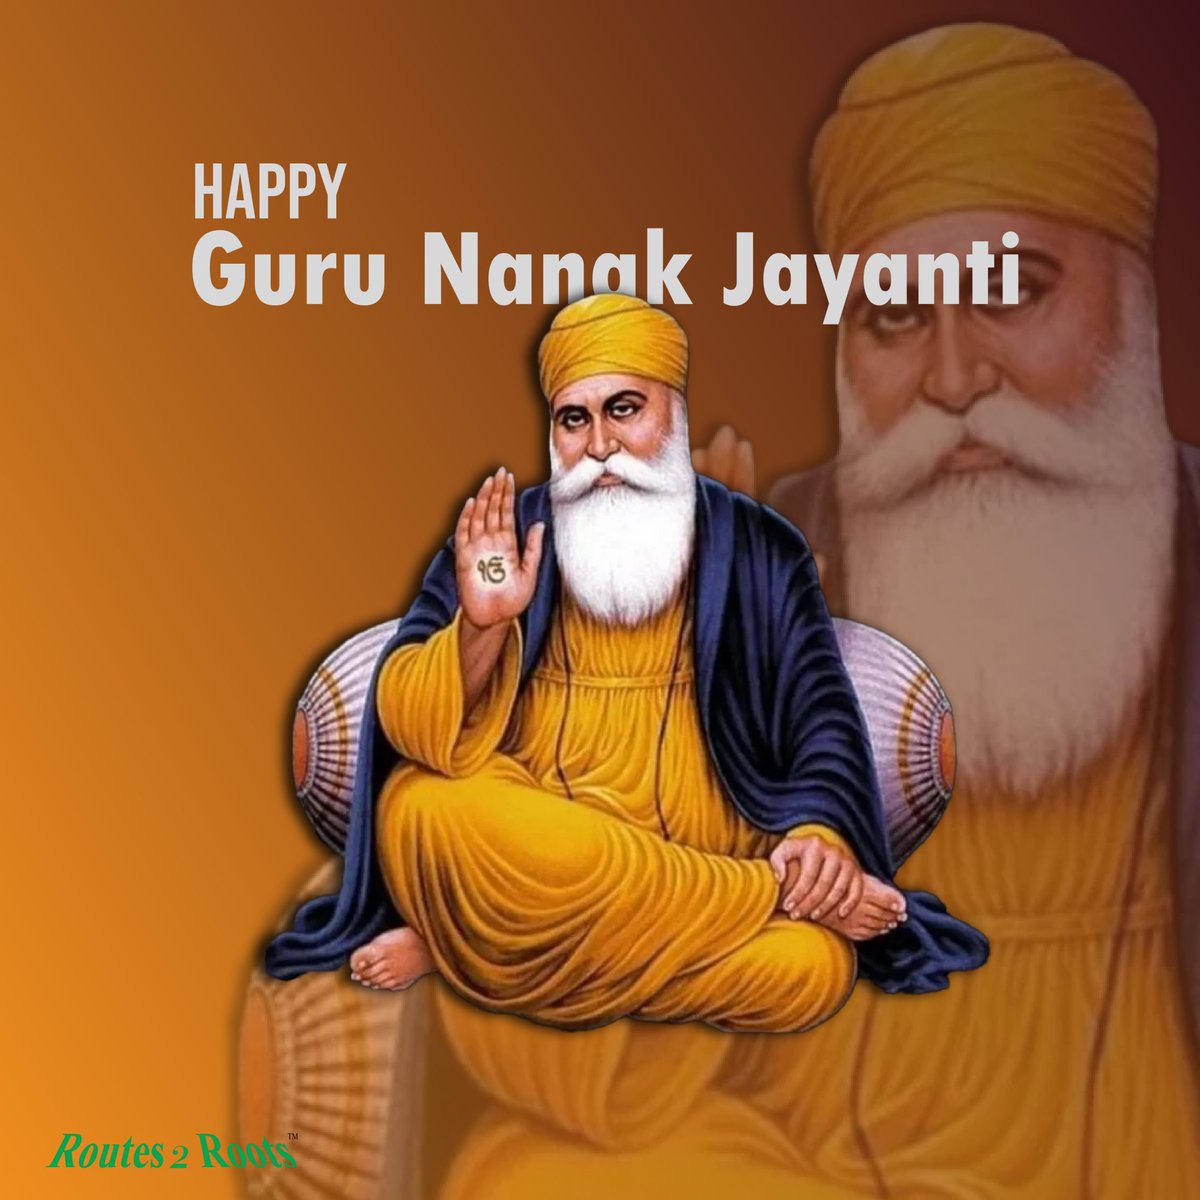 May Guru Nanak Dev Ji's teachings continue to inspire and illuminate our lives!
Wishing you a blessed and peaceful Guru Nanak Jayanti! #gurunanakdevji #GuruNanakJayanti #MinistryOfCulture #kendriyavidyalaya #KendriyaVidyalayaSangathan #maxindiafoundation